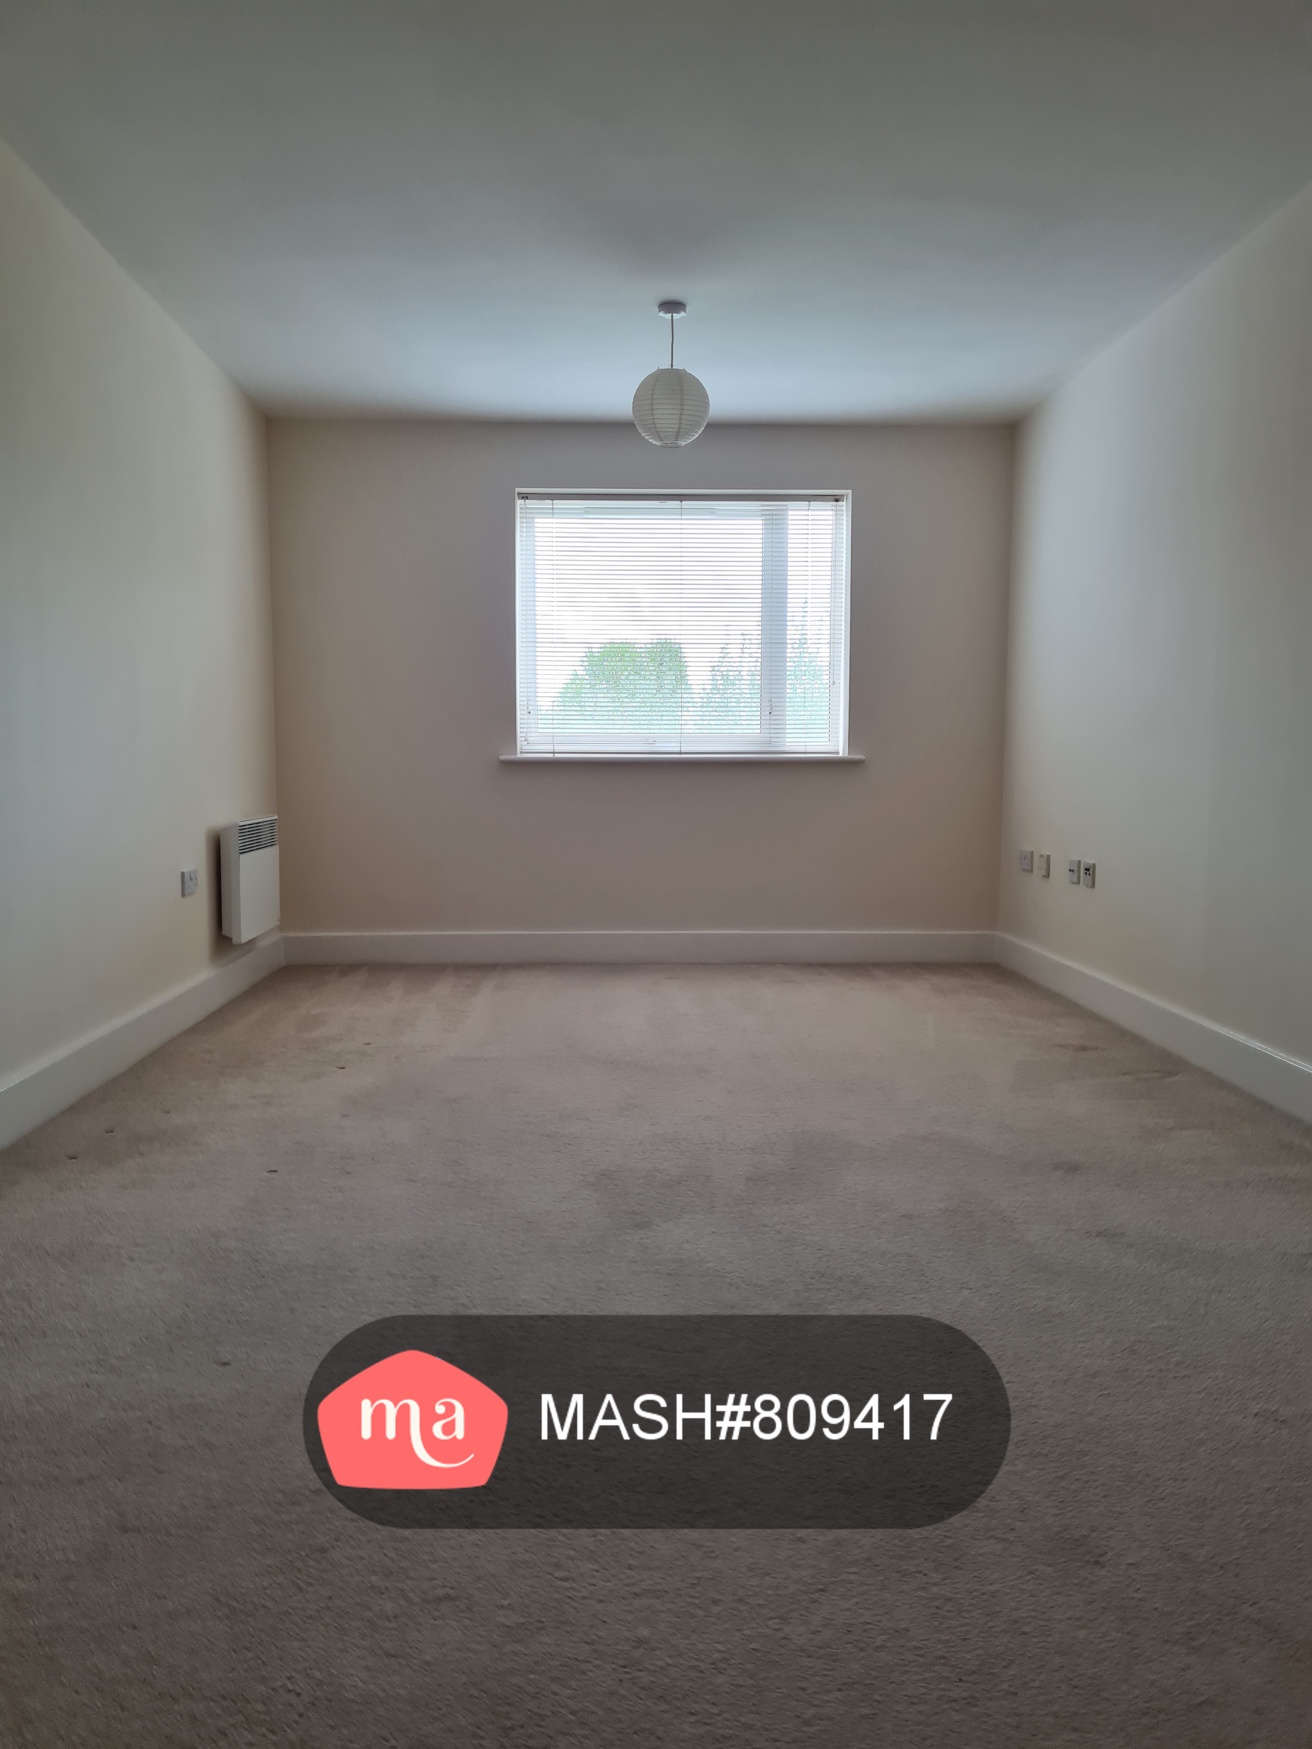 1 Bedroom Flat to rent in Aylesbury - Mashroom